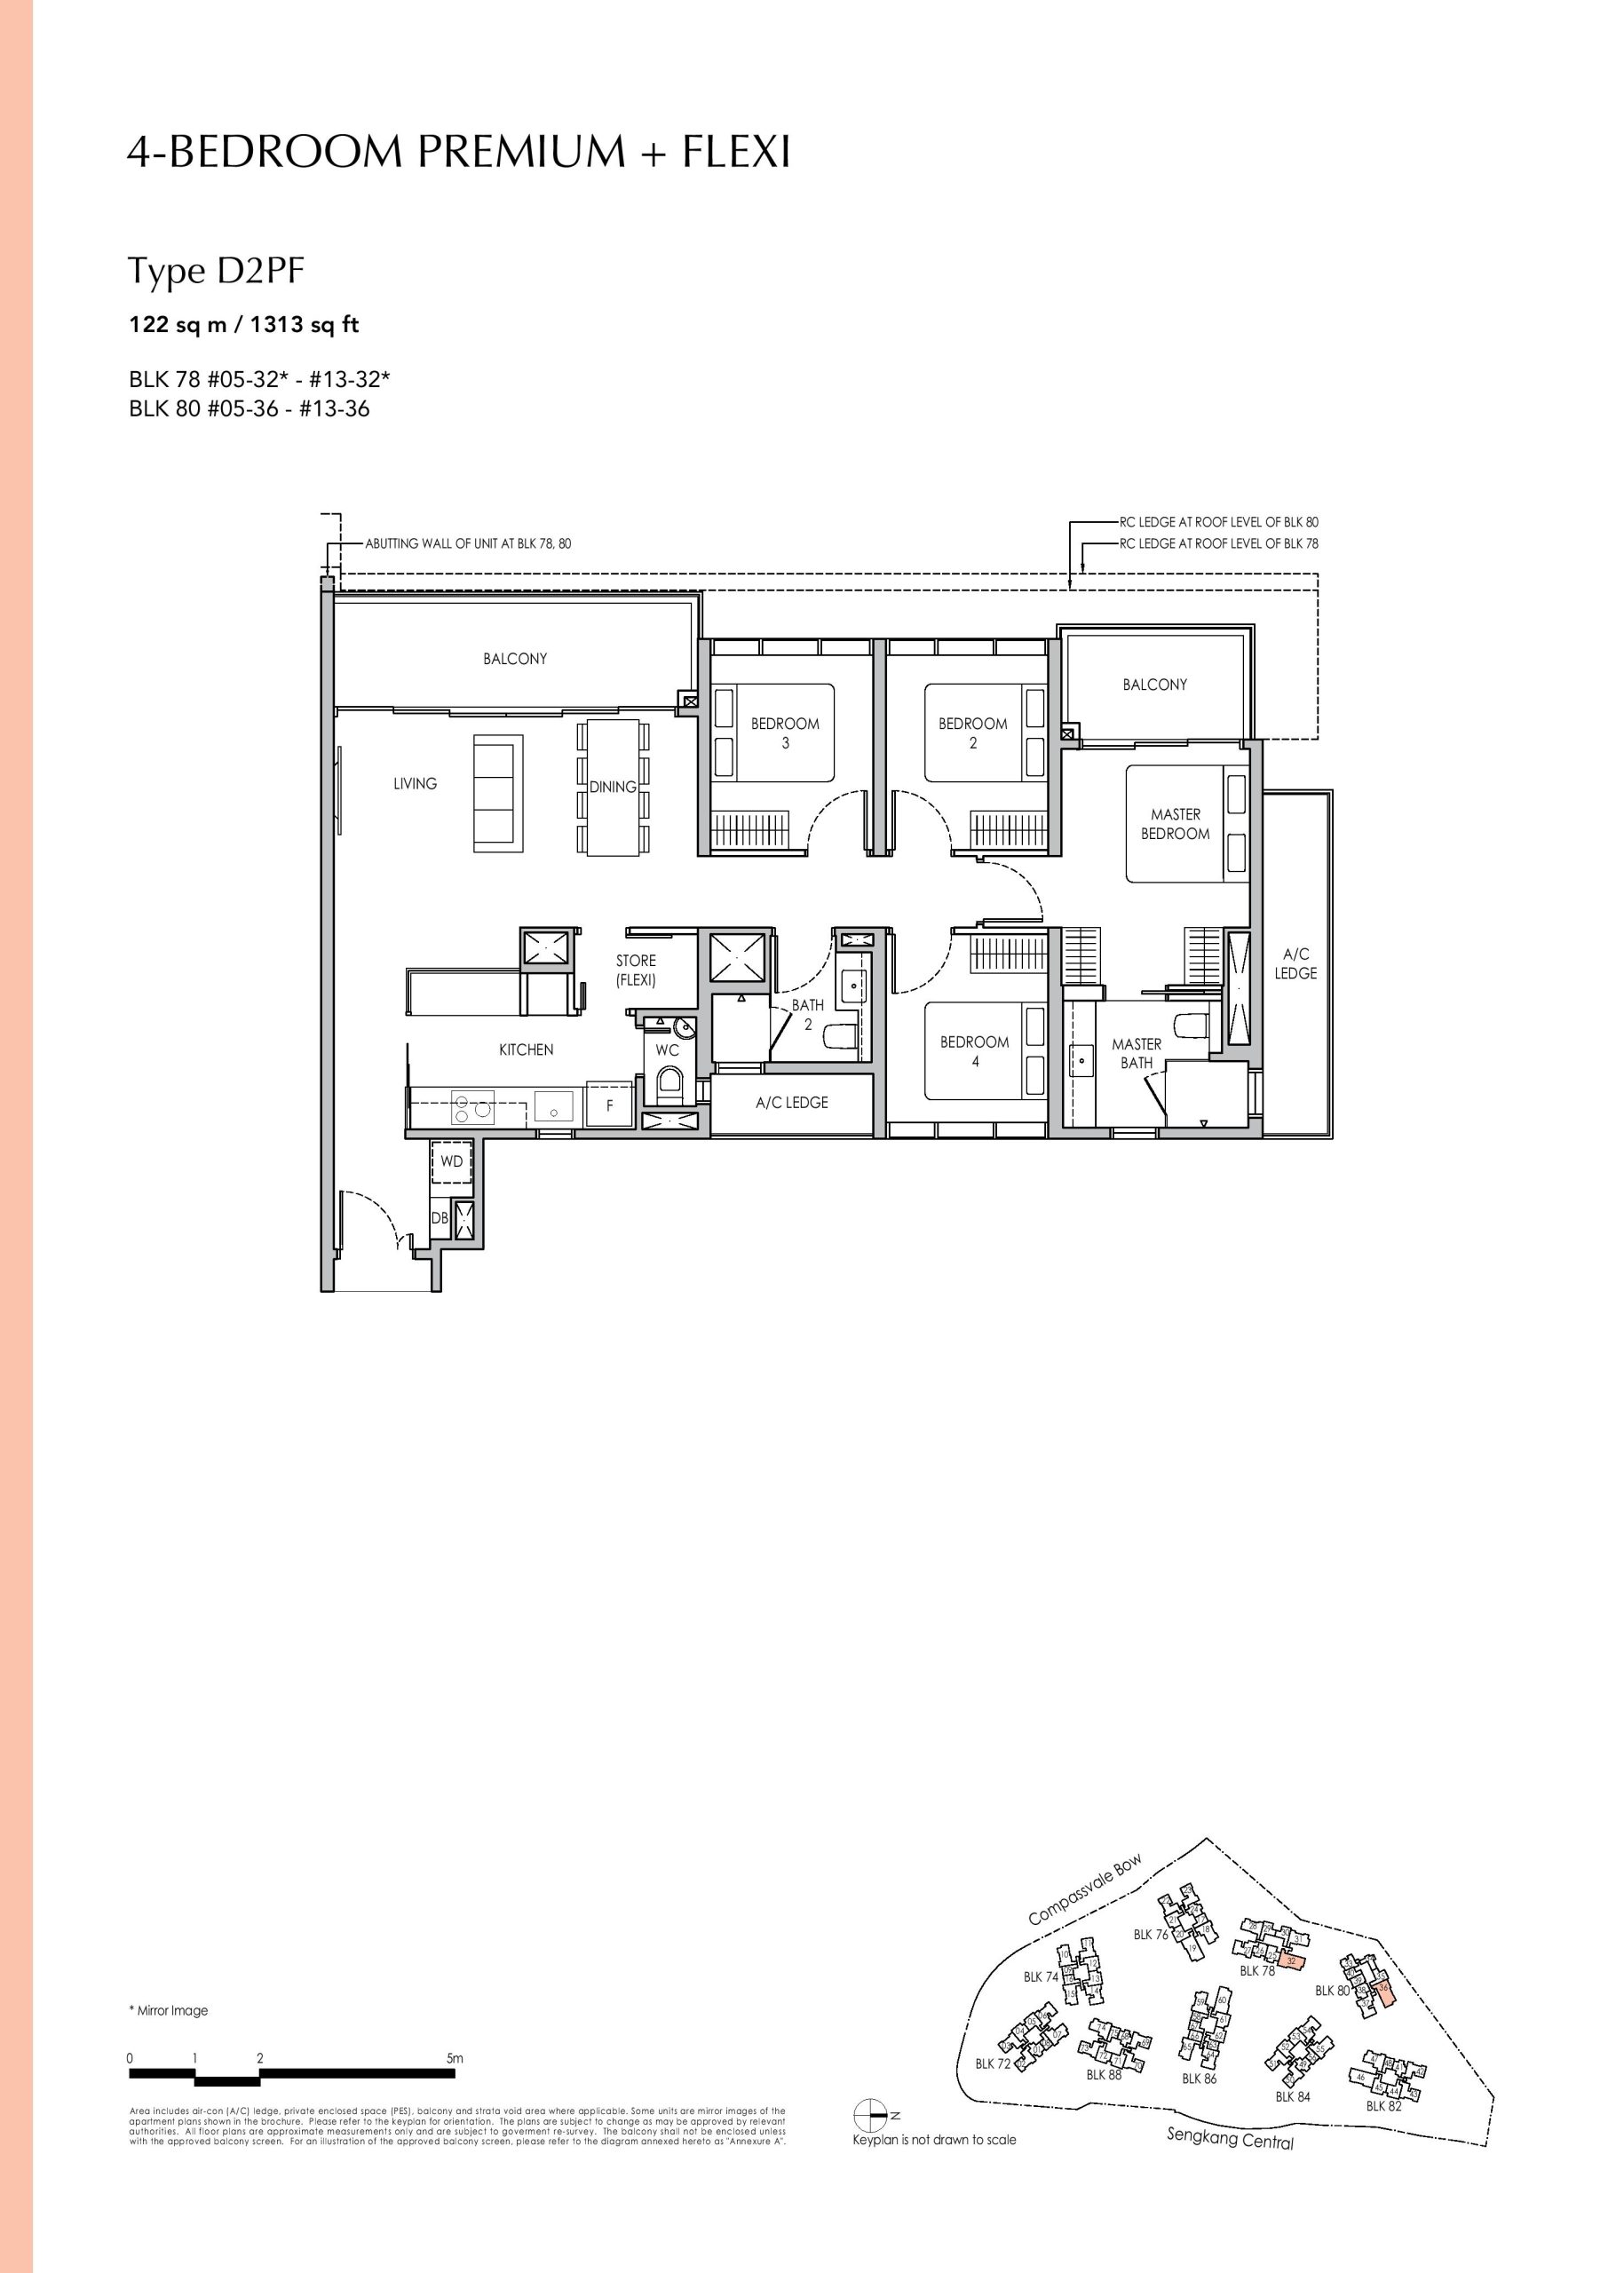 Sengkang Grand Residences 4 Bedroom Premium + Flexi Type D2PF Floor Plans